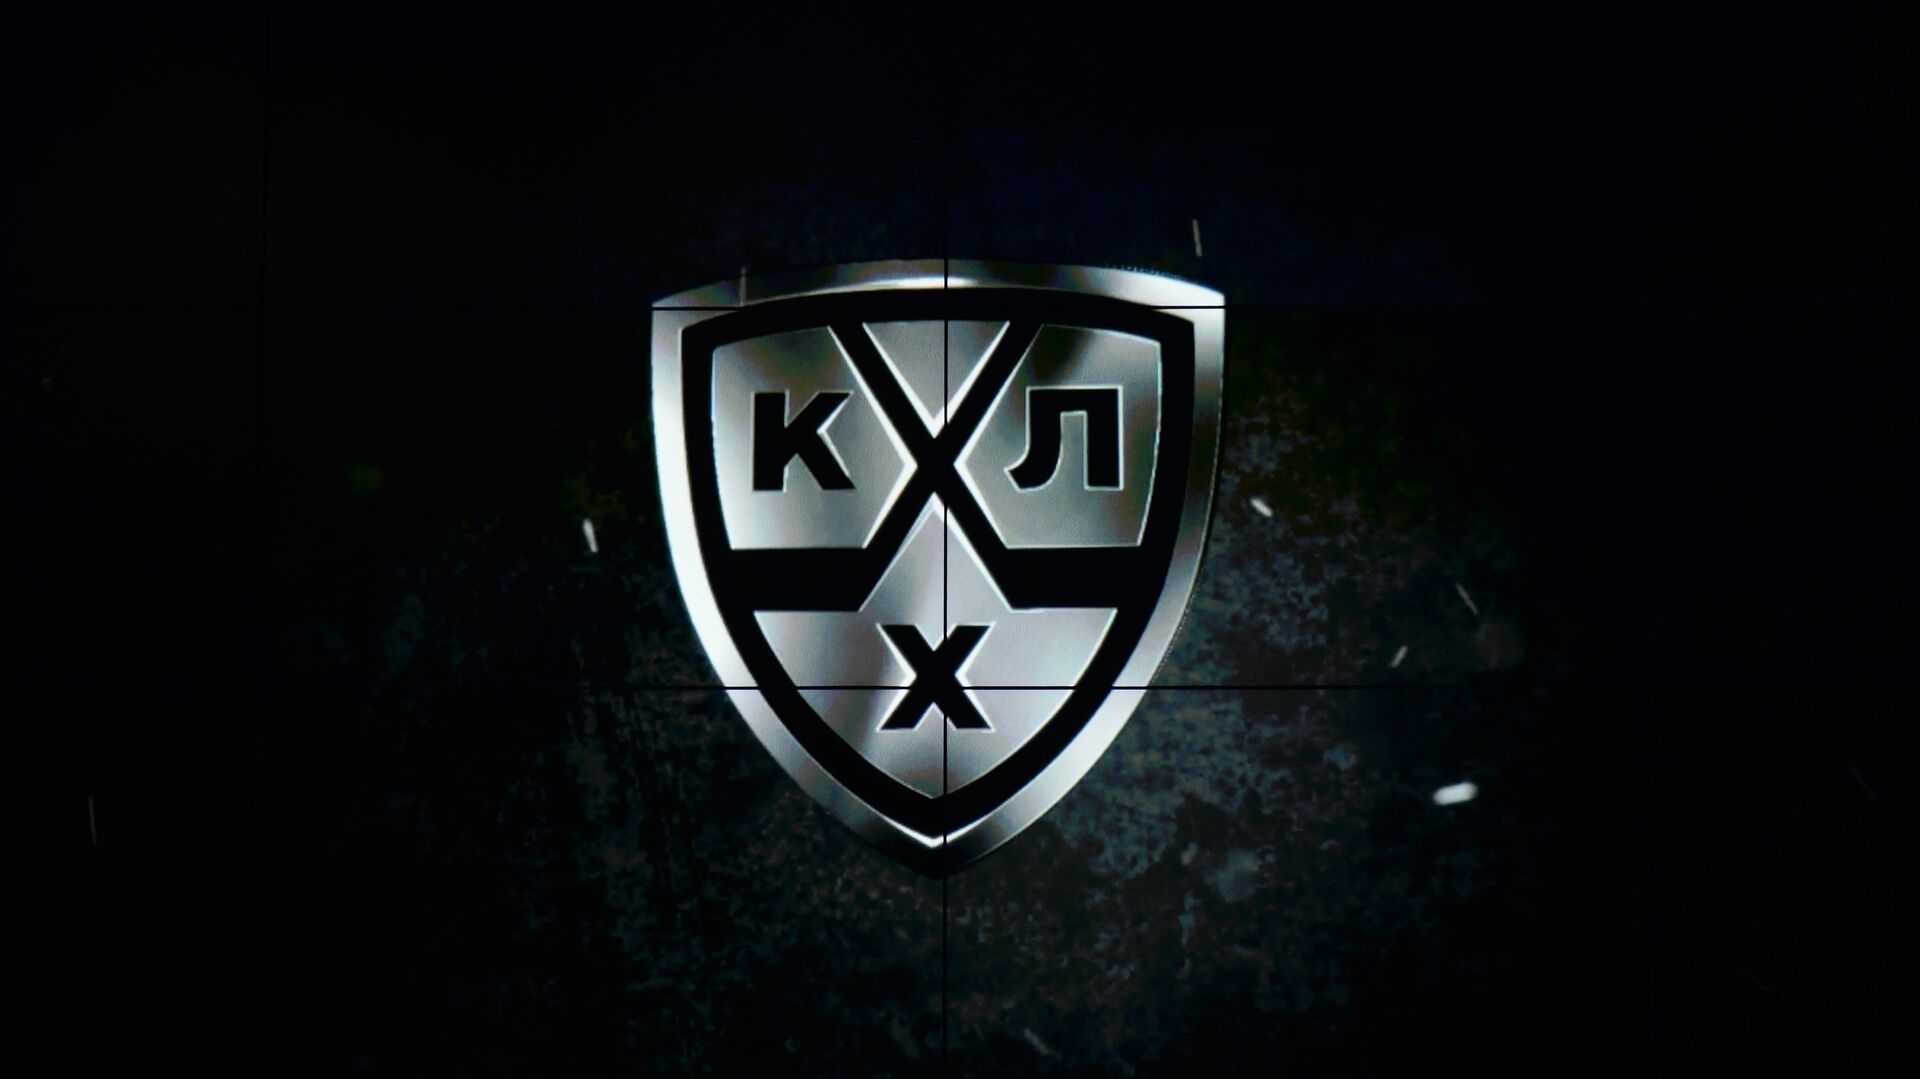 Логотип Континентальной хоккейной лиги (КХЛ) - РИА Новости, 1920, 16.03.2021